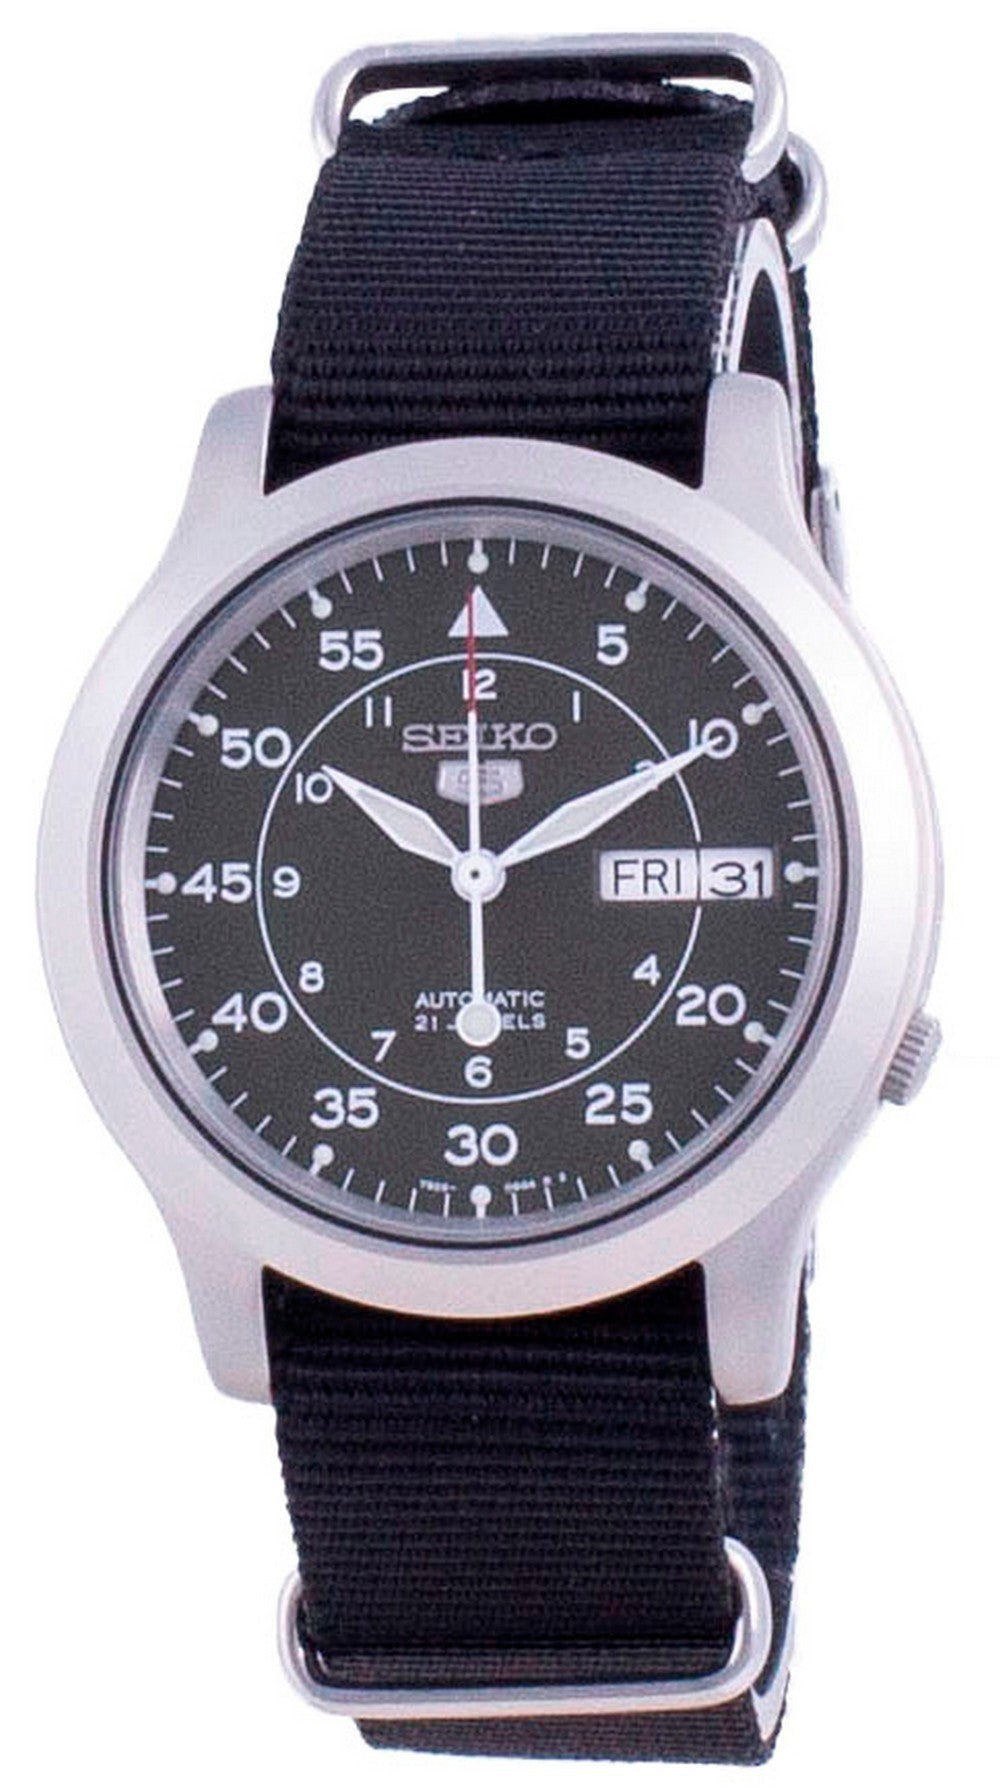 Seiko 5 Military Snk805k2-var-natos13 Automatic Nylon Strap Men's Watch